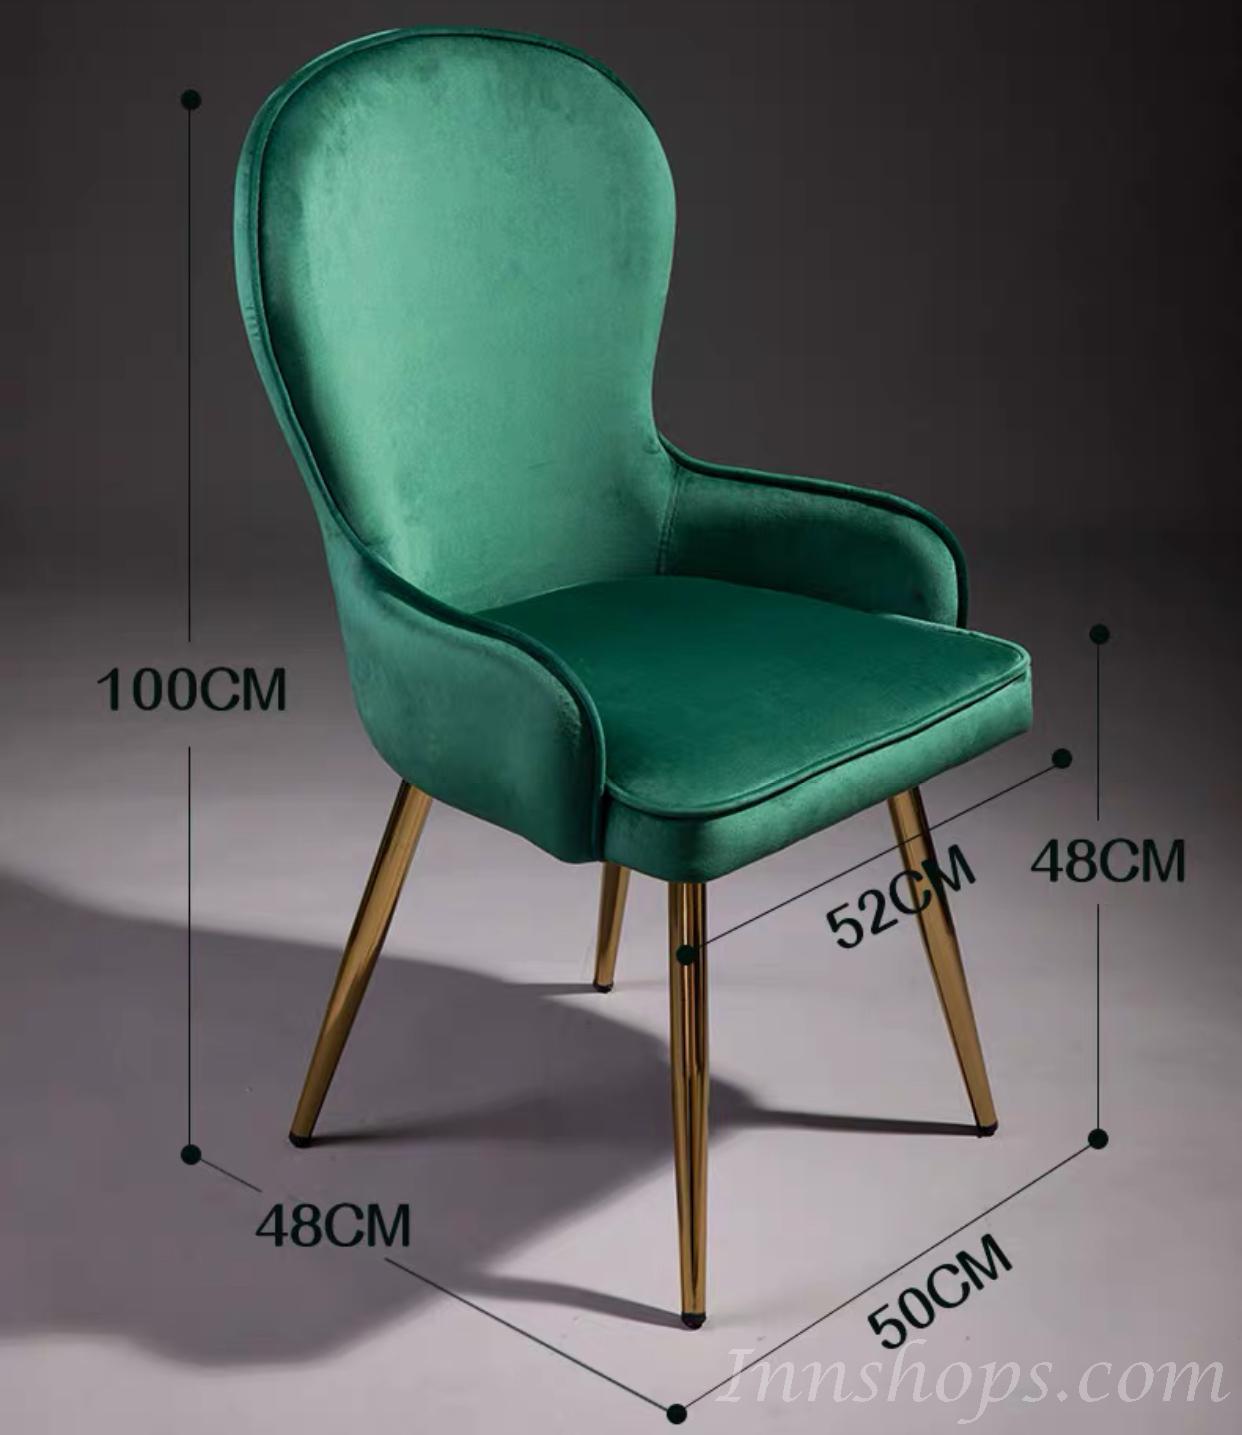 鐵藝系列 餐椅子 (IS5066)